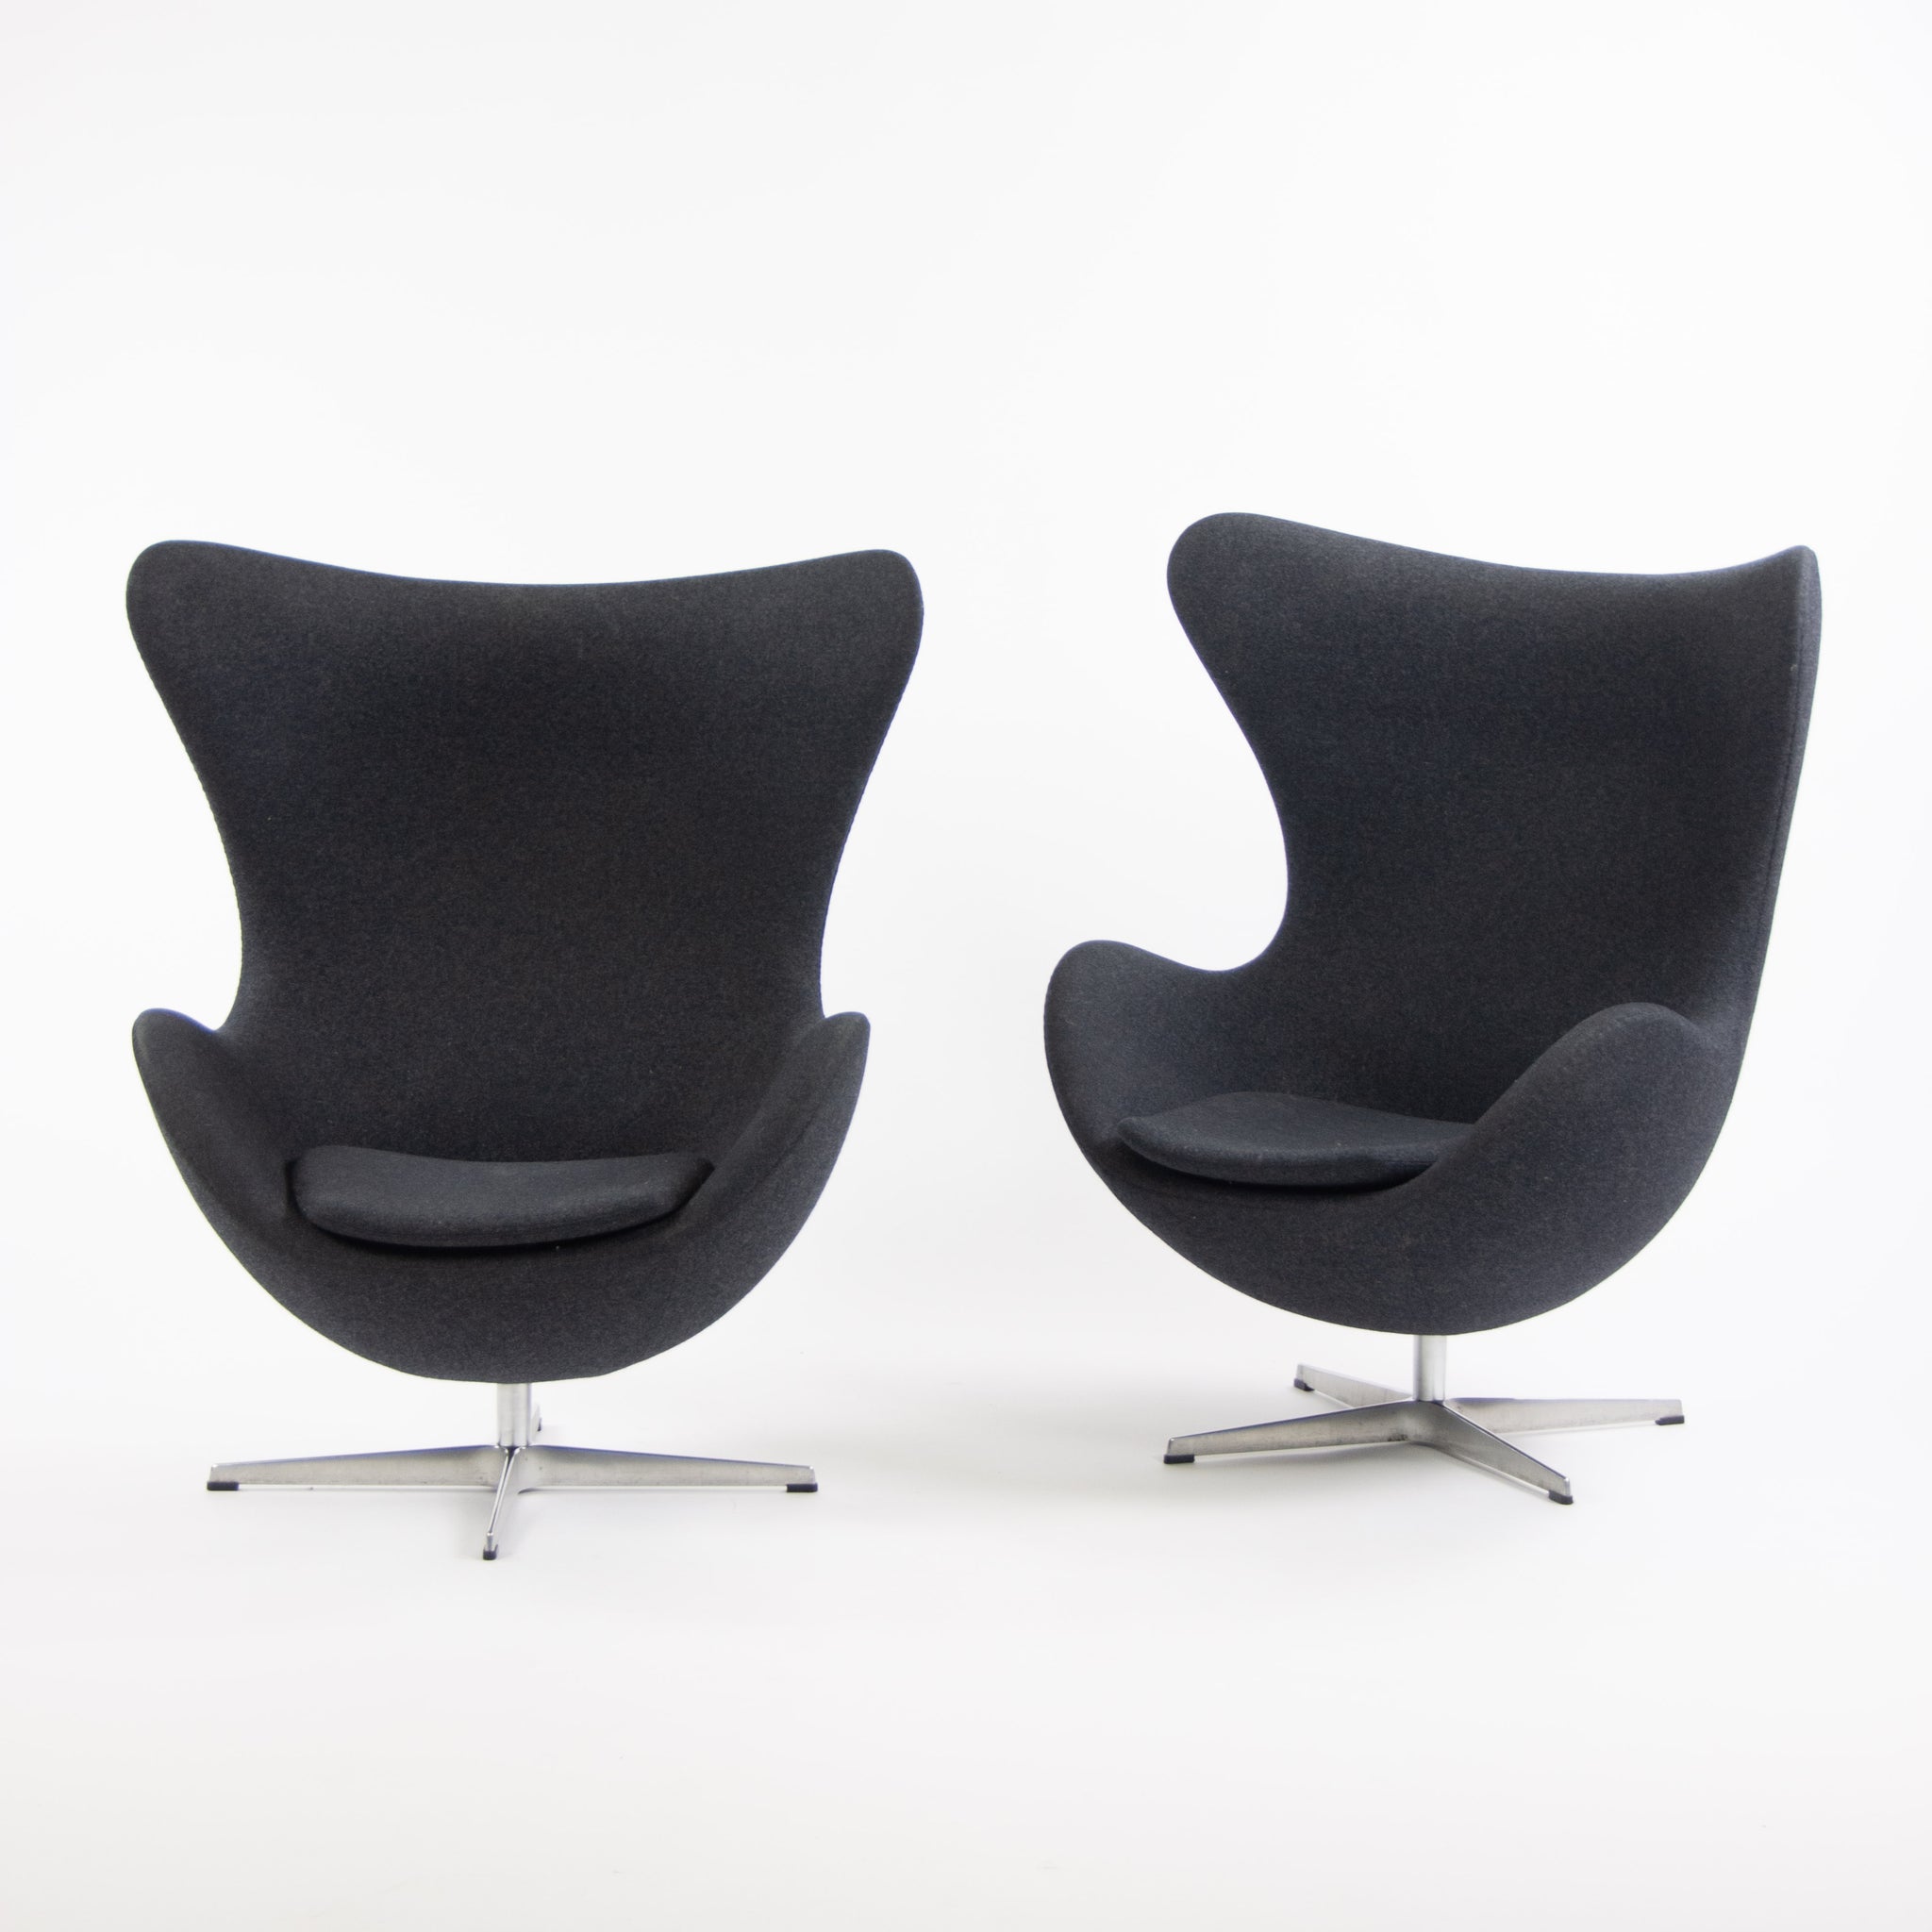 SOLD Egg Chair by Arne Jacobsen for Fritz Hansen Original Fabric Denmark Gray, 2013, 2 Available